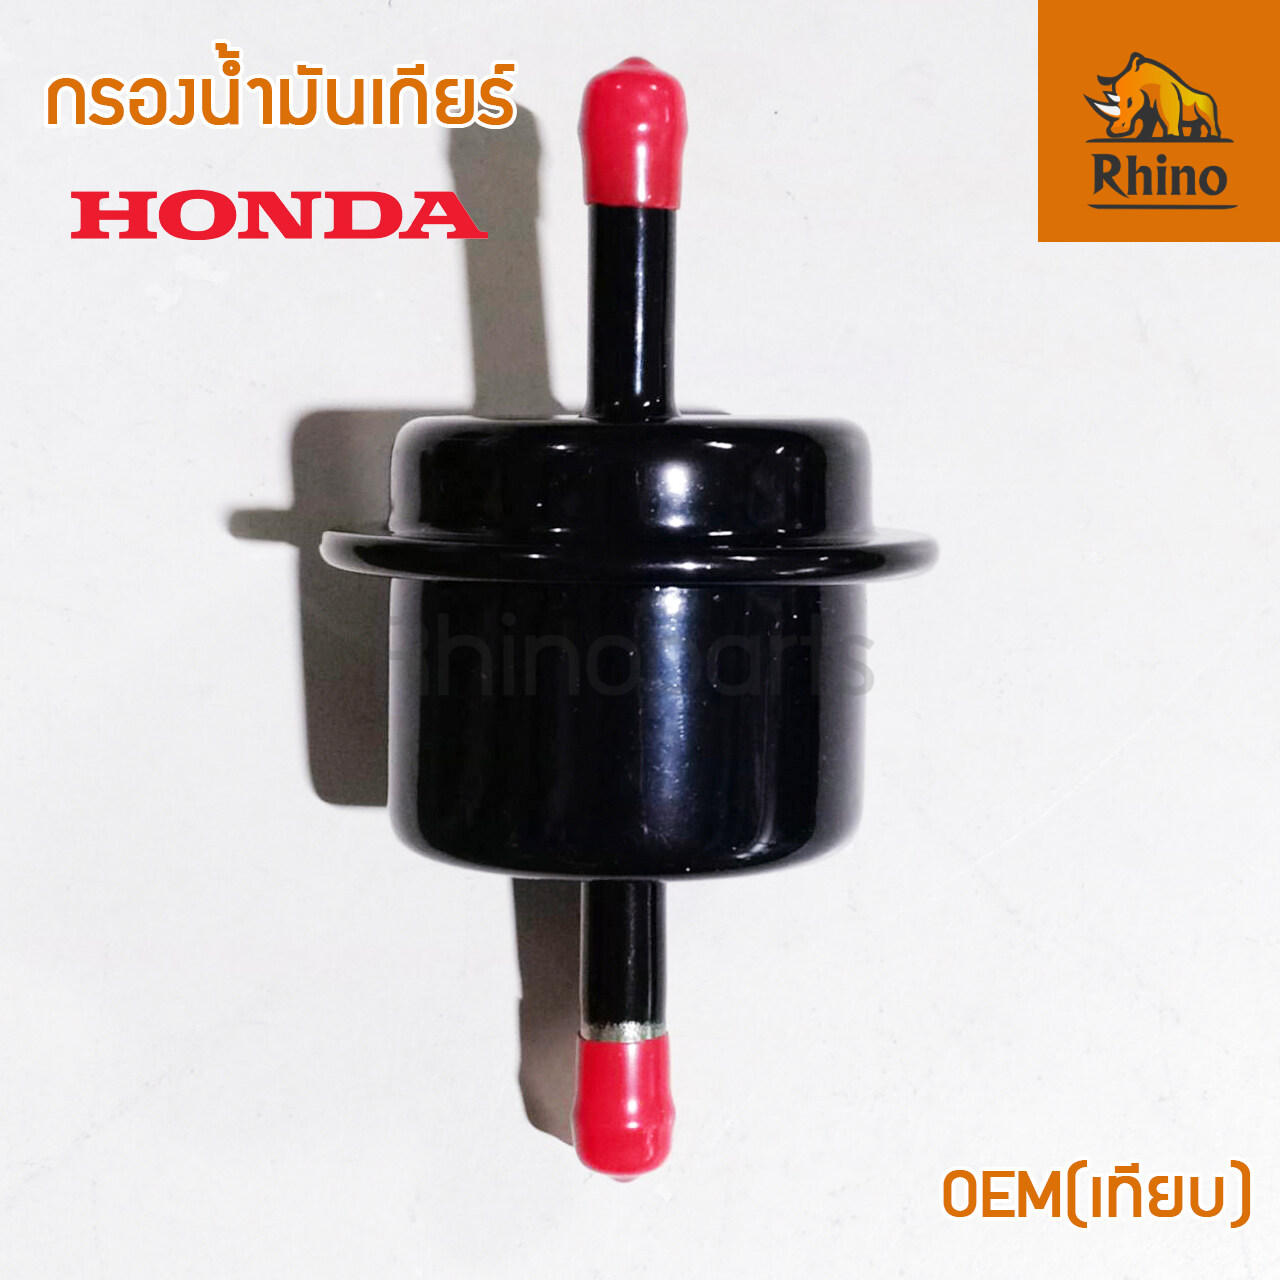 กรองน้ำมันเกียร์ Honda (25430-PLR-003)OEM